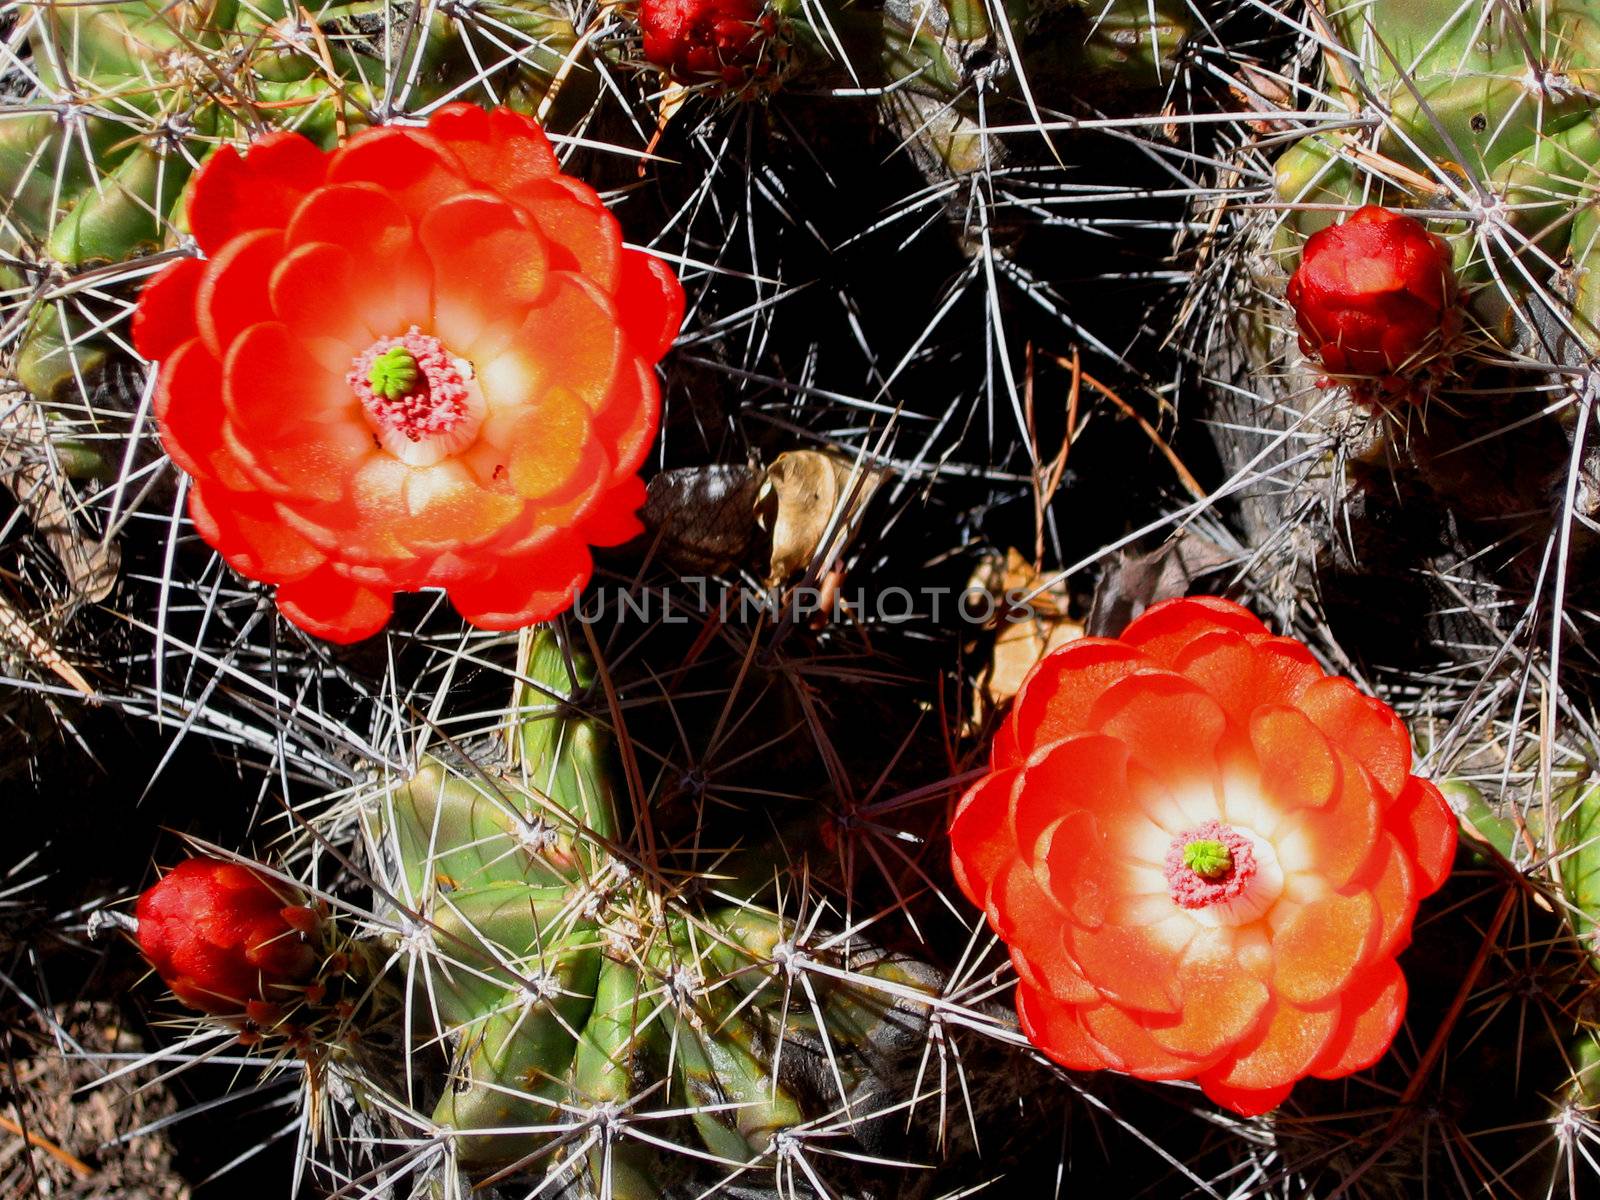 Blooming claret cup cactus (Echinocereus triglochidiatus), also called hedgehog cactus, blossoms in the wild.